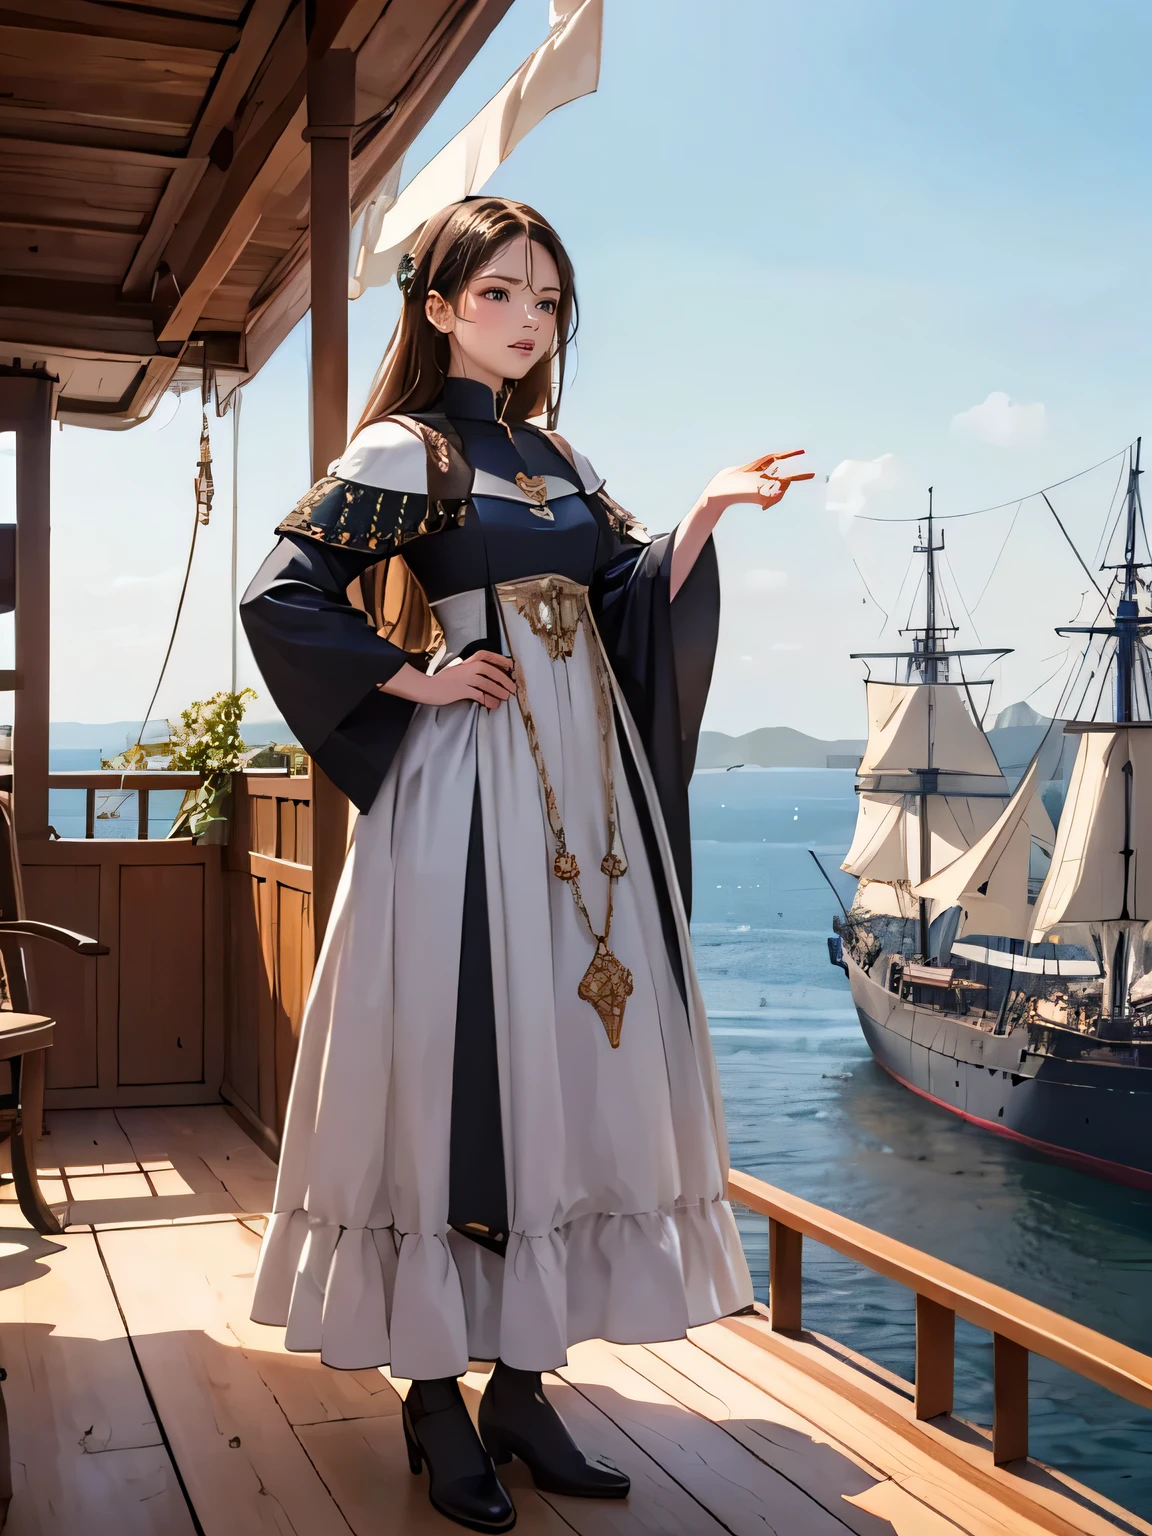 средневековое европейское аристократическое платье, на палубе корабля в эпоху Великих географических открытий в средние века,